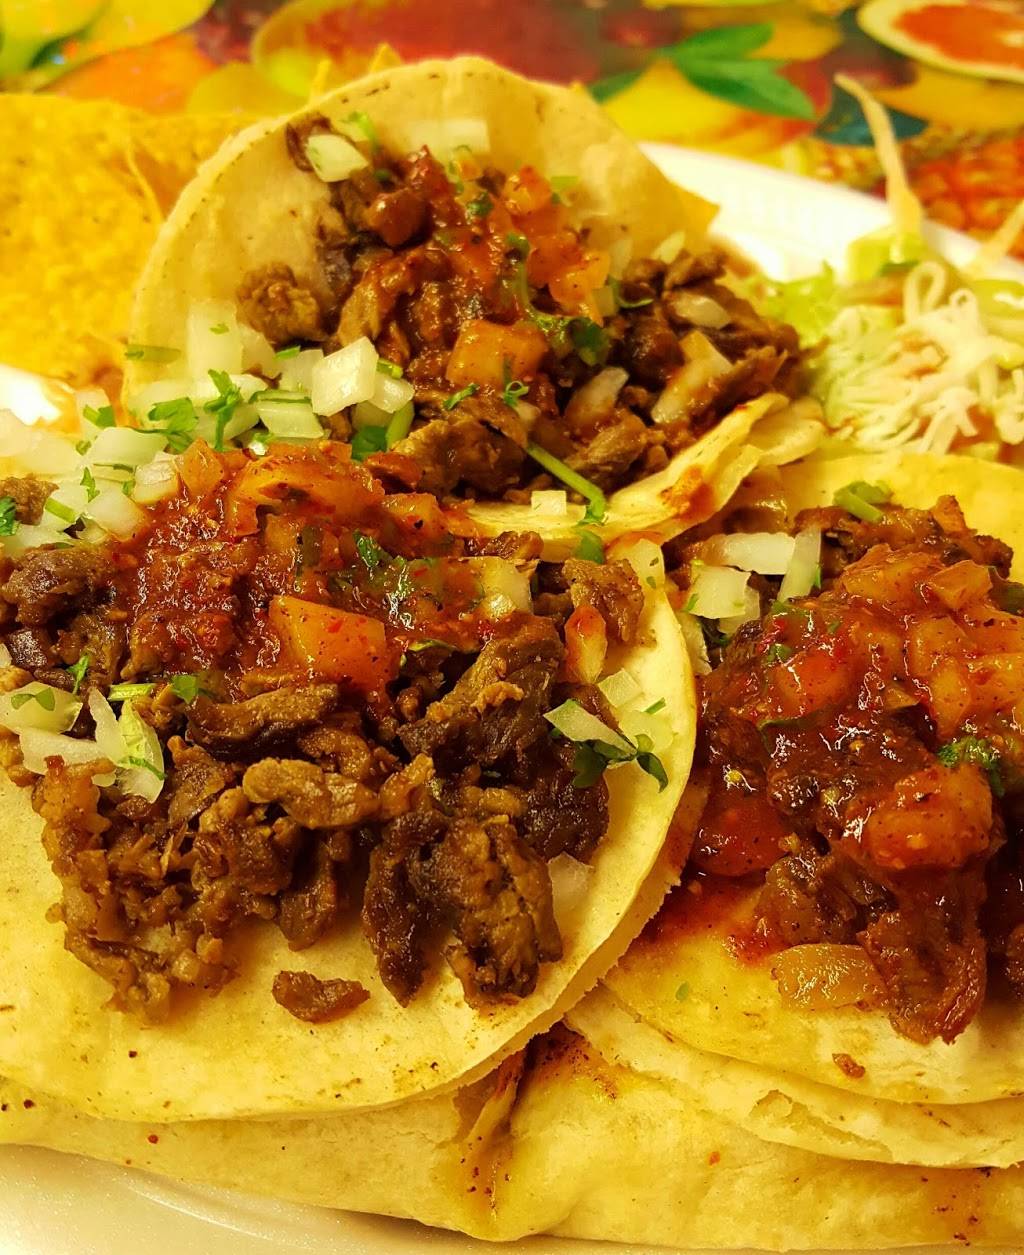 Linos Tacos | restaurant | 13555 Roscoe Blvd, Panorama City, CA 91402, USA | 7472141469 OR +1 747-214-1469